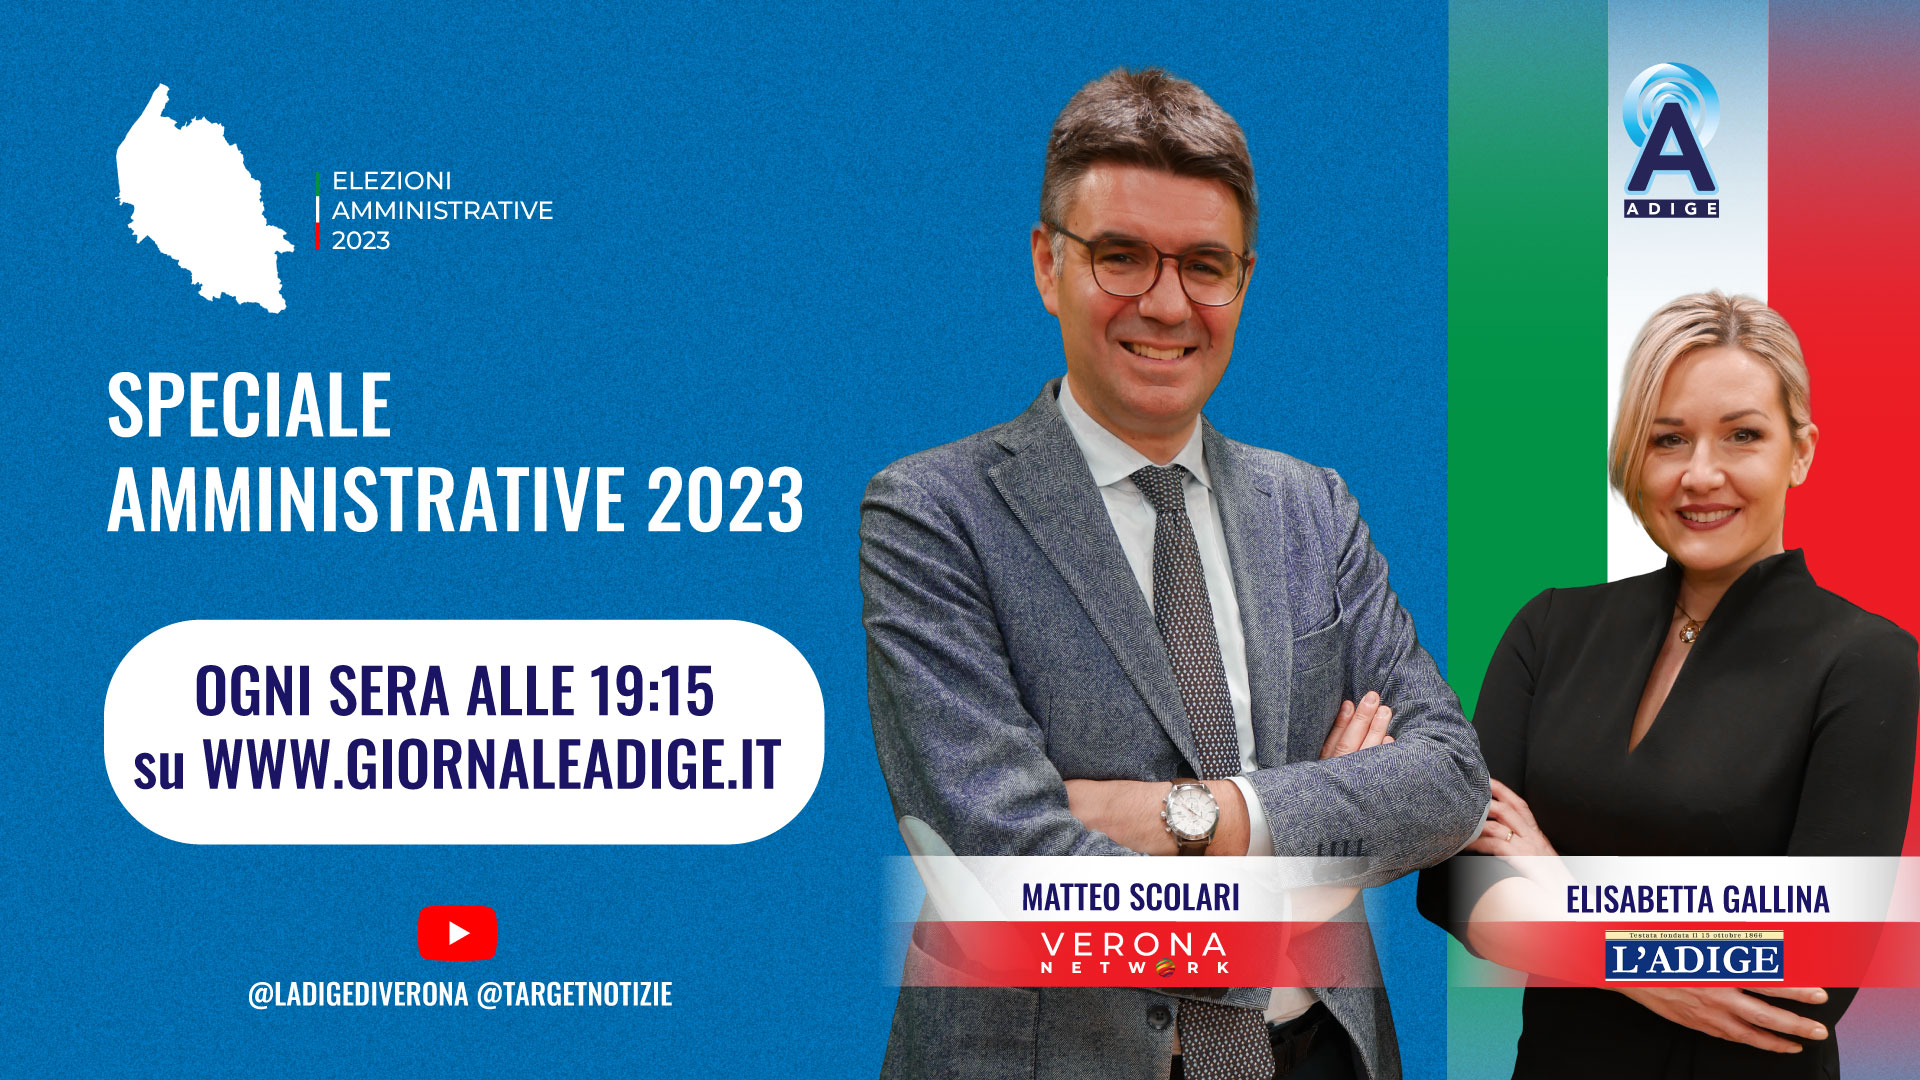 Elezioni amministrative, domani debutta il format L’Adige-Target e Verona Network